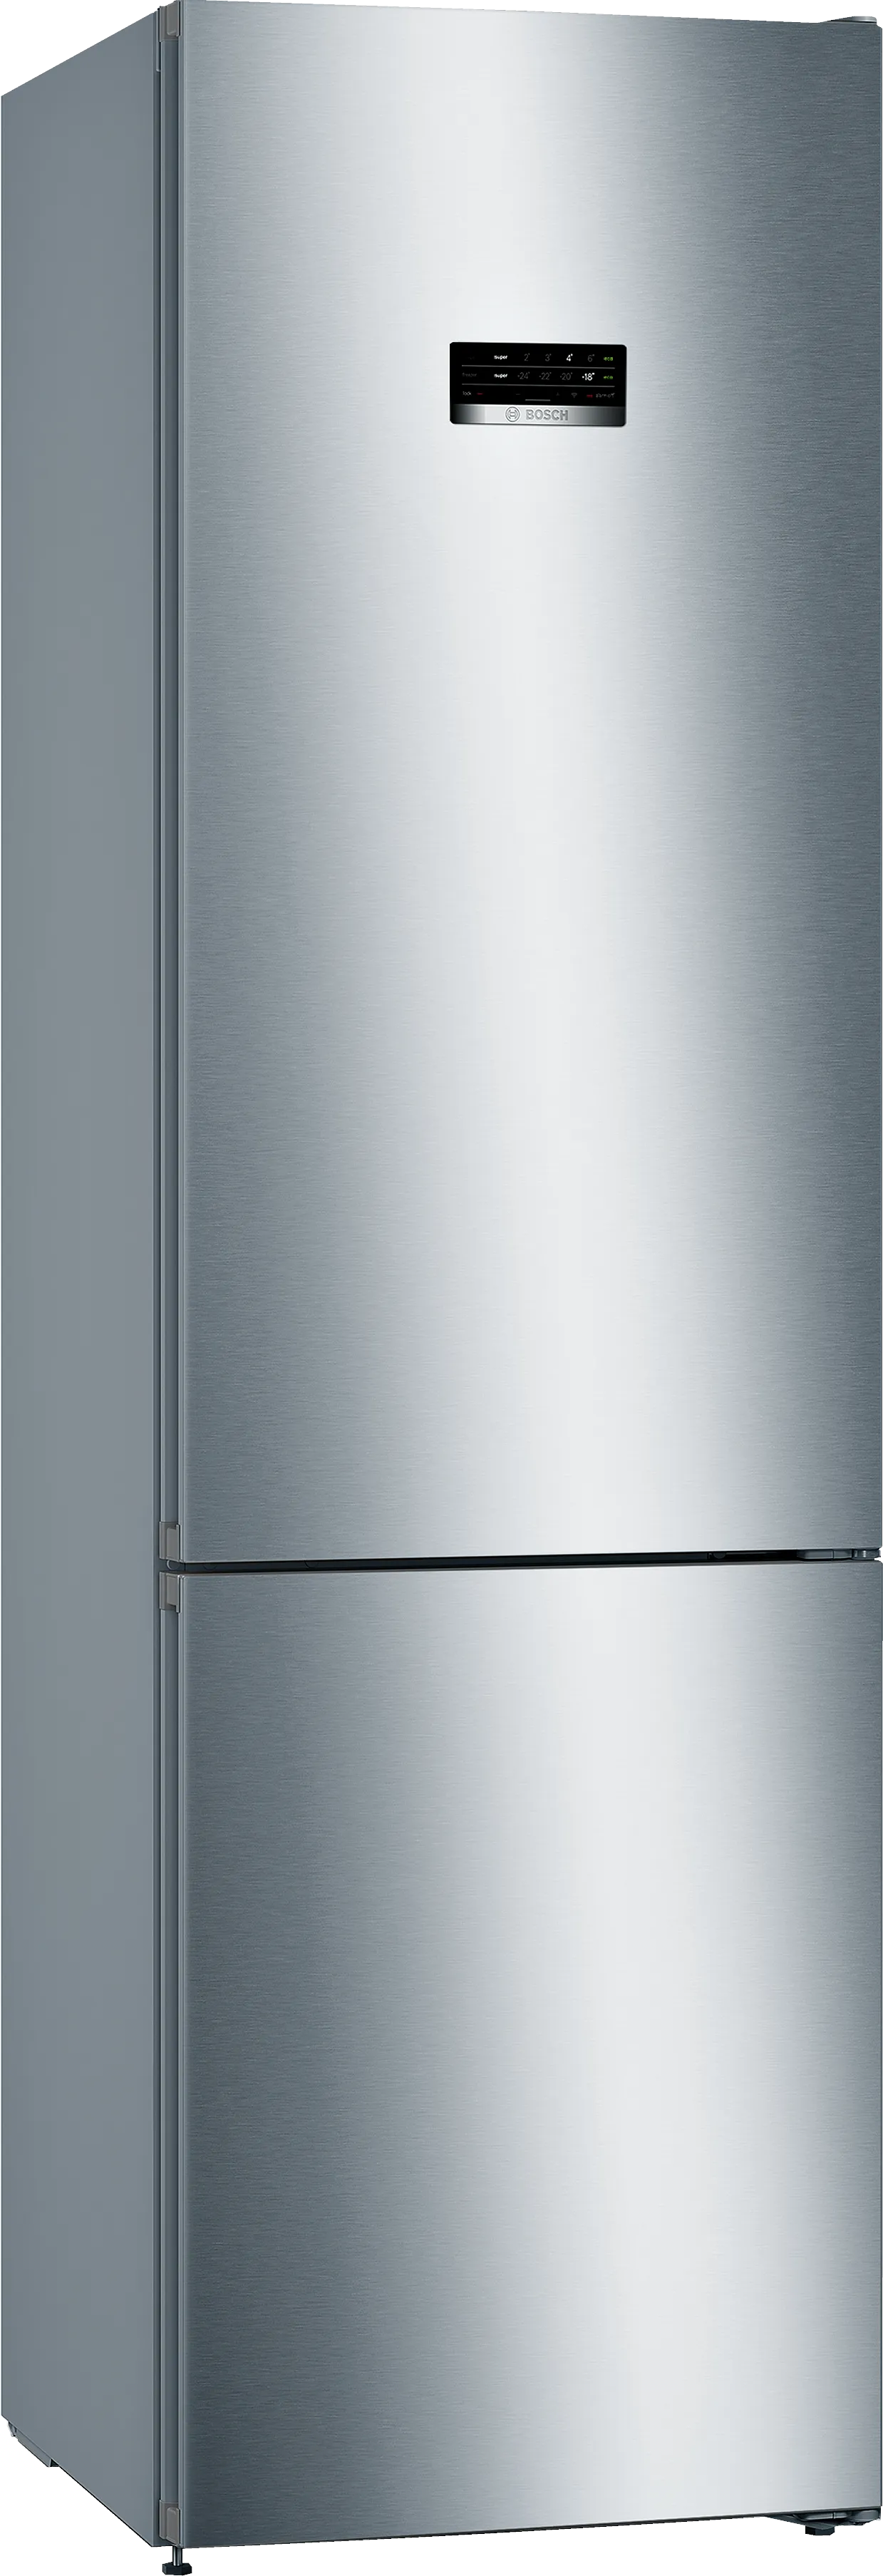 Серия 4 Отдельно стоящий холодильник с нижней морозильной камерой 203 x 60 cm Нерж. ст. легкой очистки 